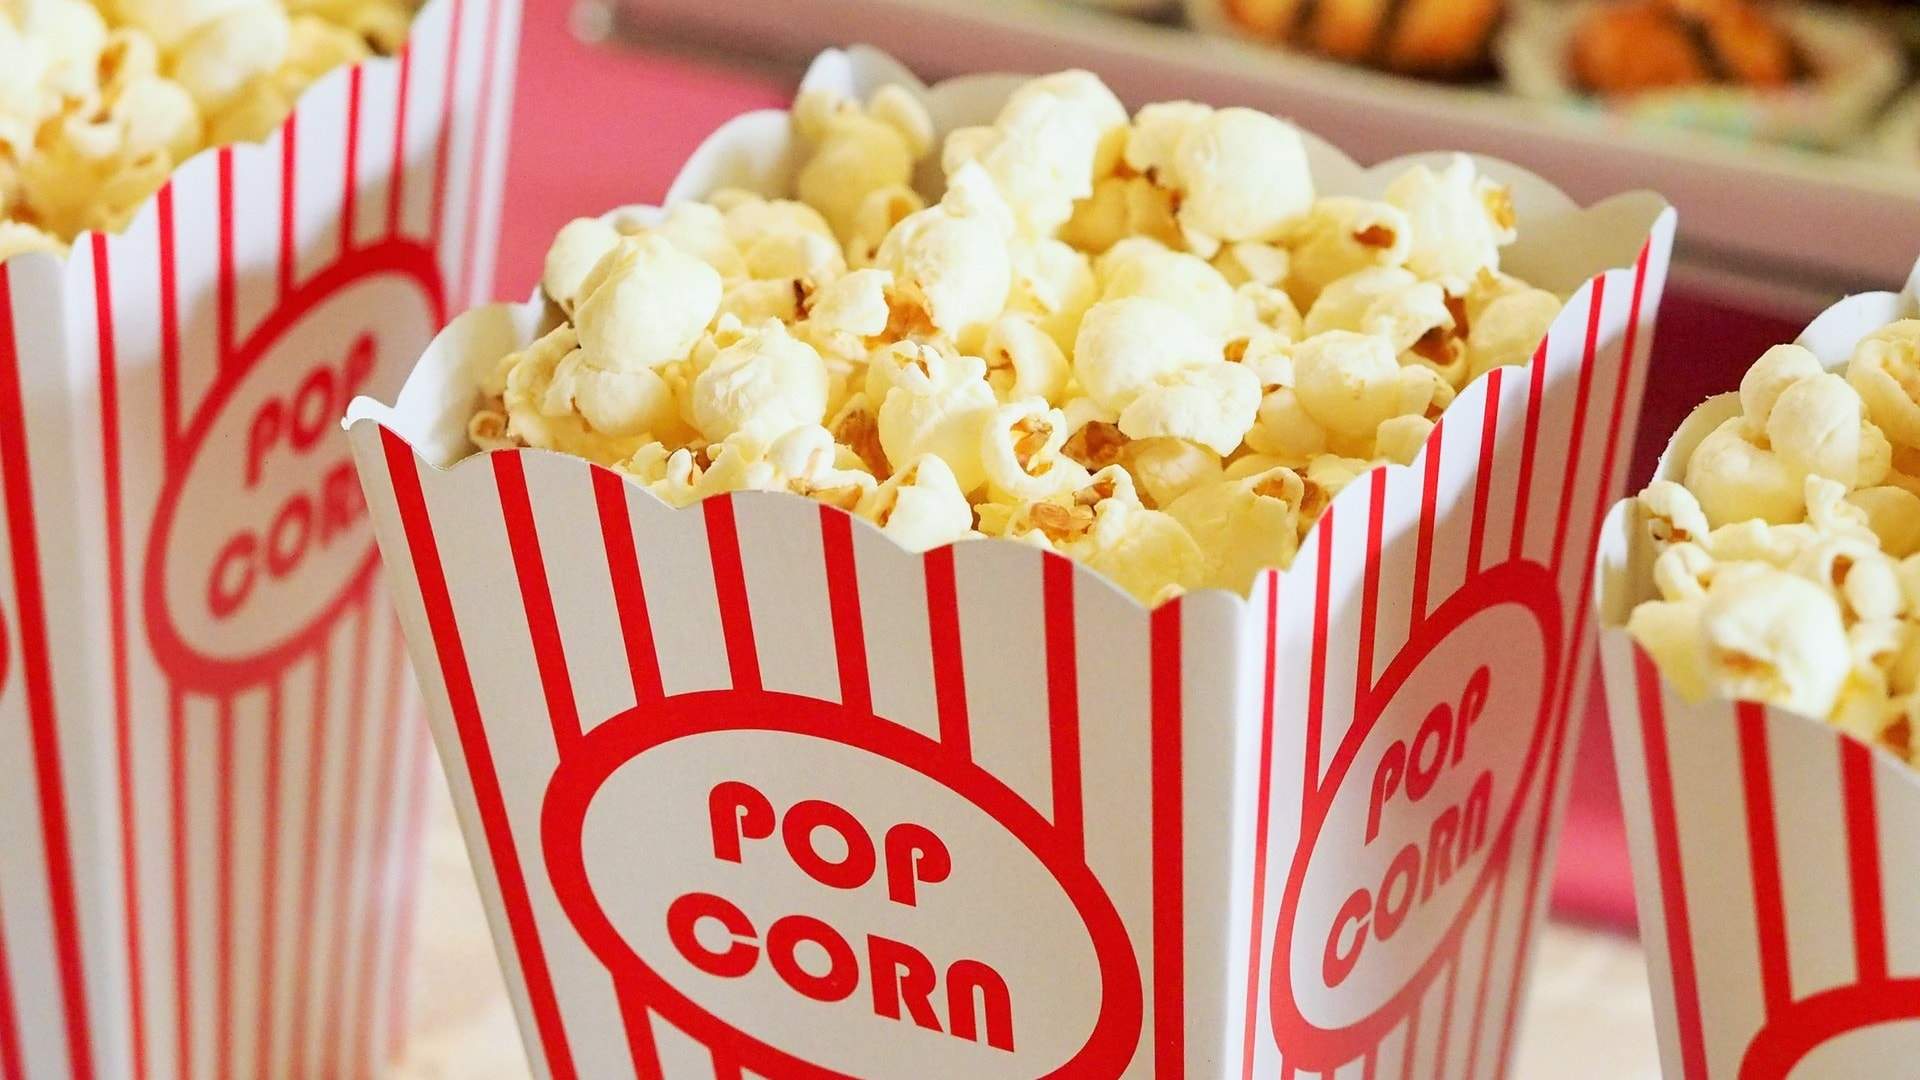 Cinema Nova Choc Top and Popcorn Sale